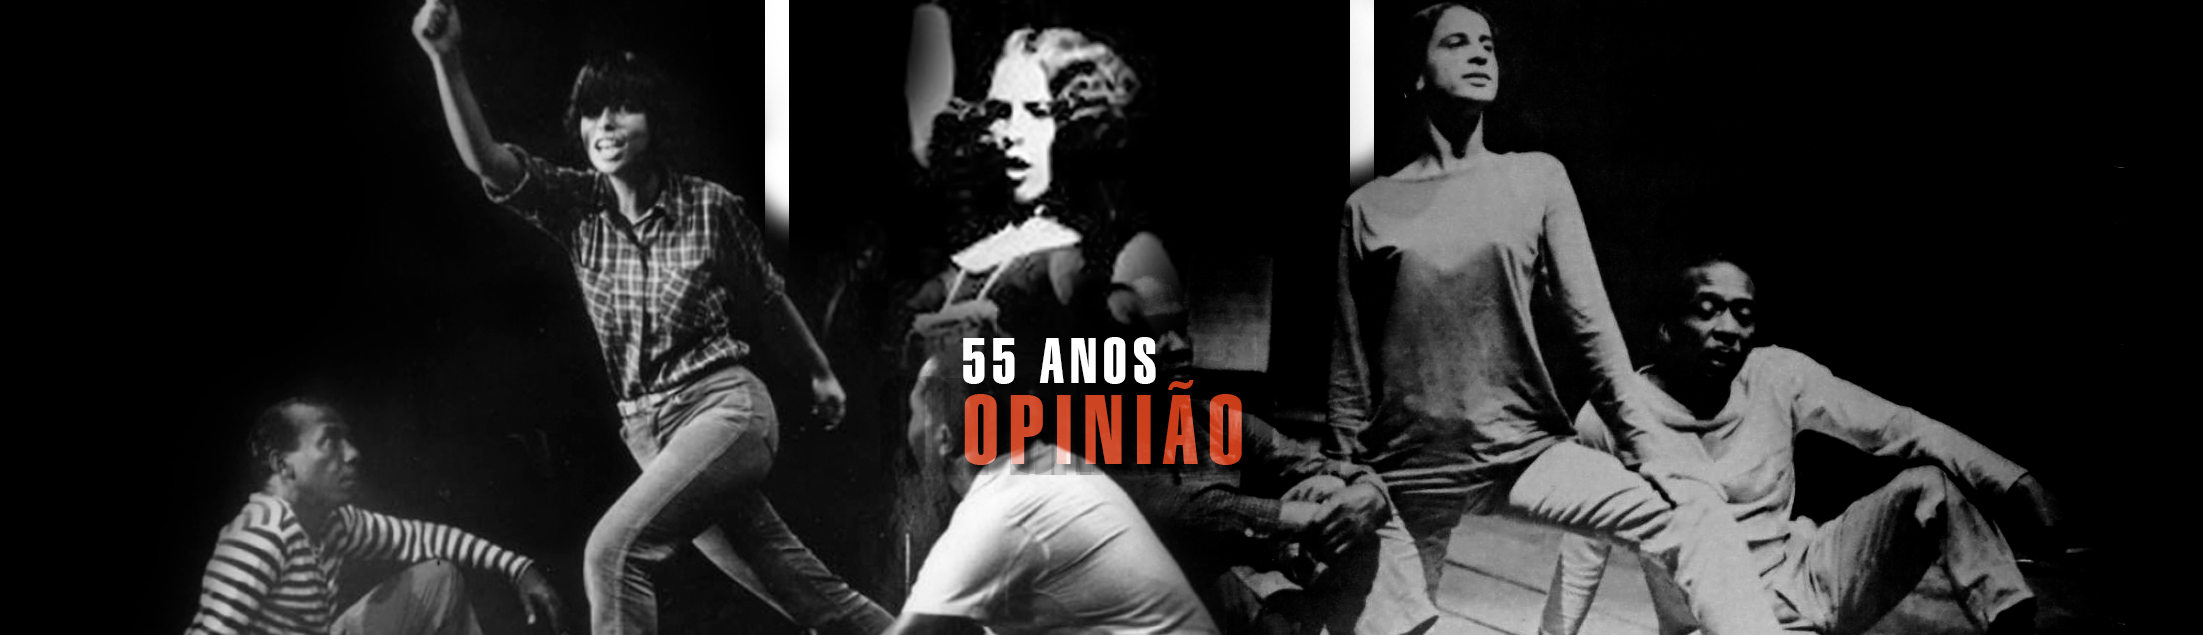 55 anos de Opinião: política, resistência e música popular brasileira